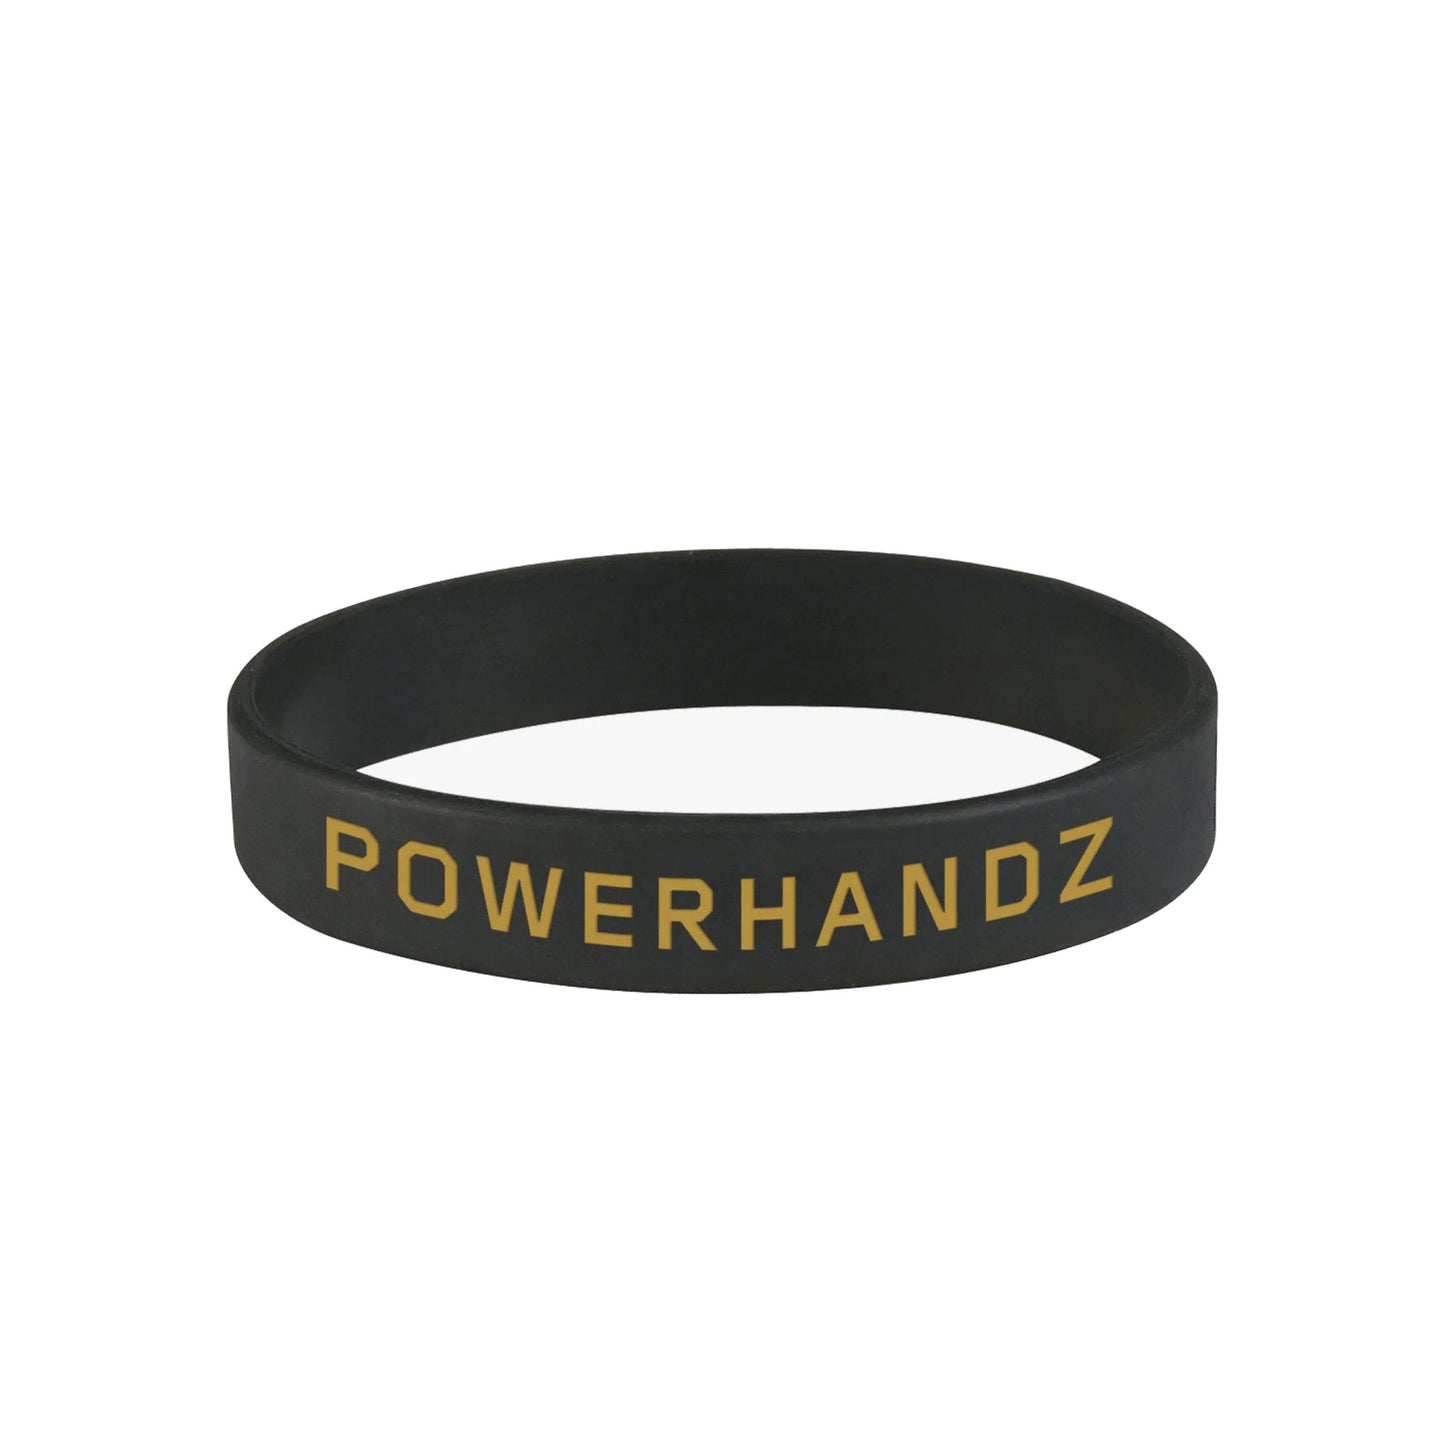 Limited Edition POWERHANDZ Wristband - POWERHANDZ